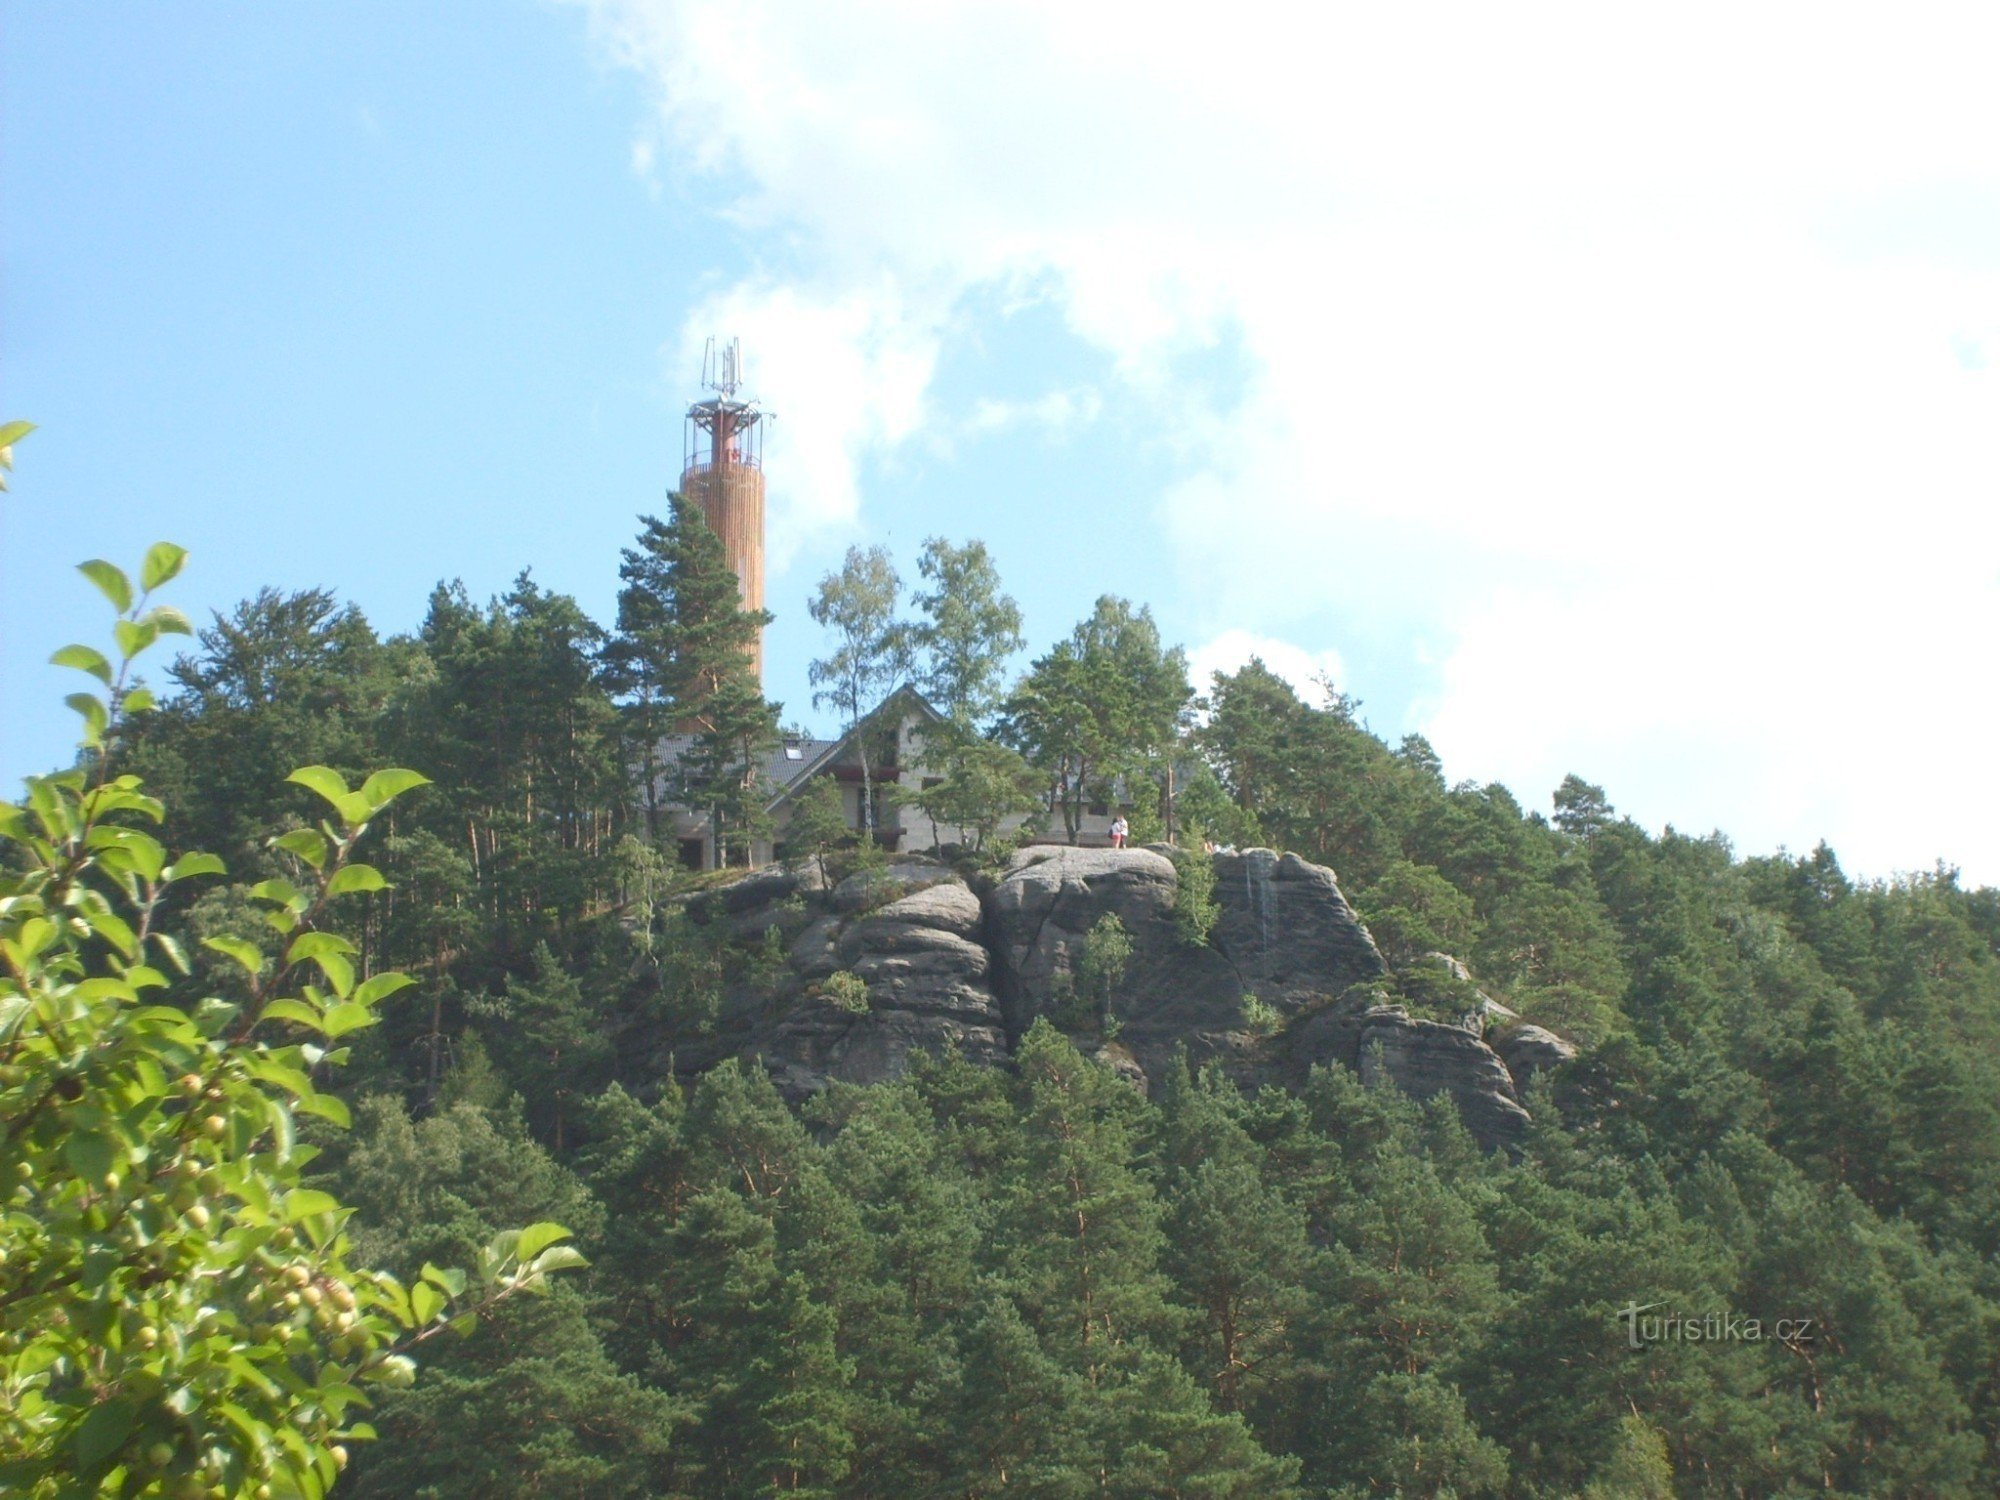 Trên Stráž, một tháp quan sát mới được xây dựng